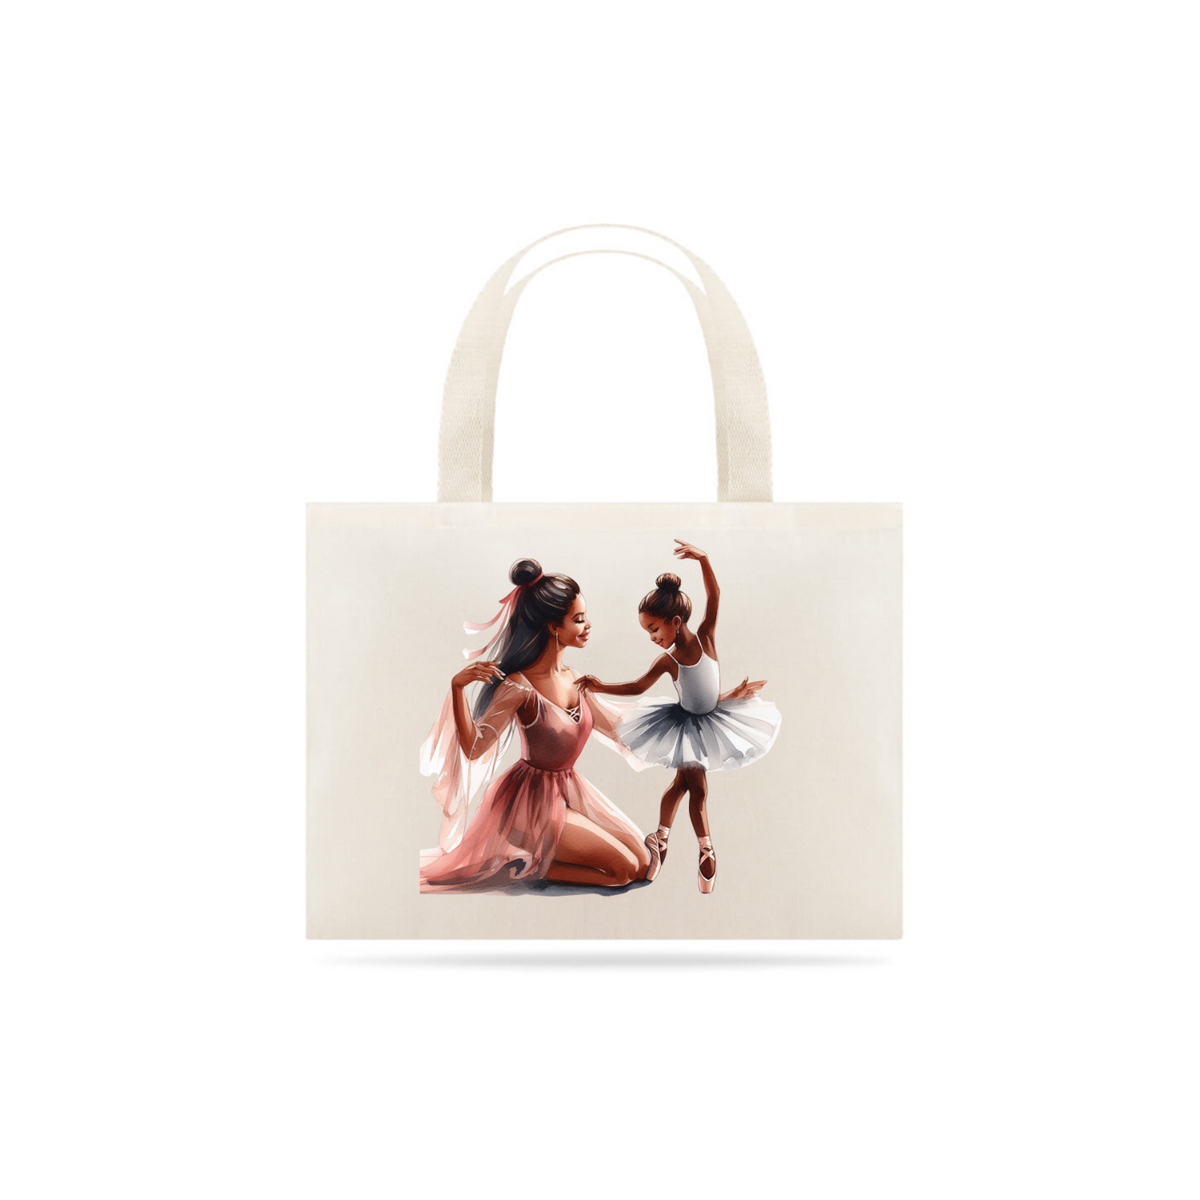 Nome do produto: Eco bag  - Renata e Olivia